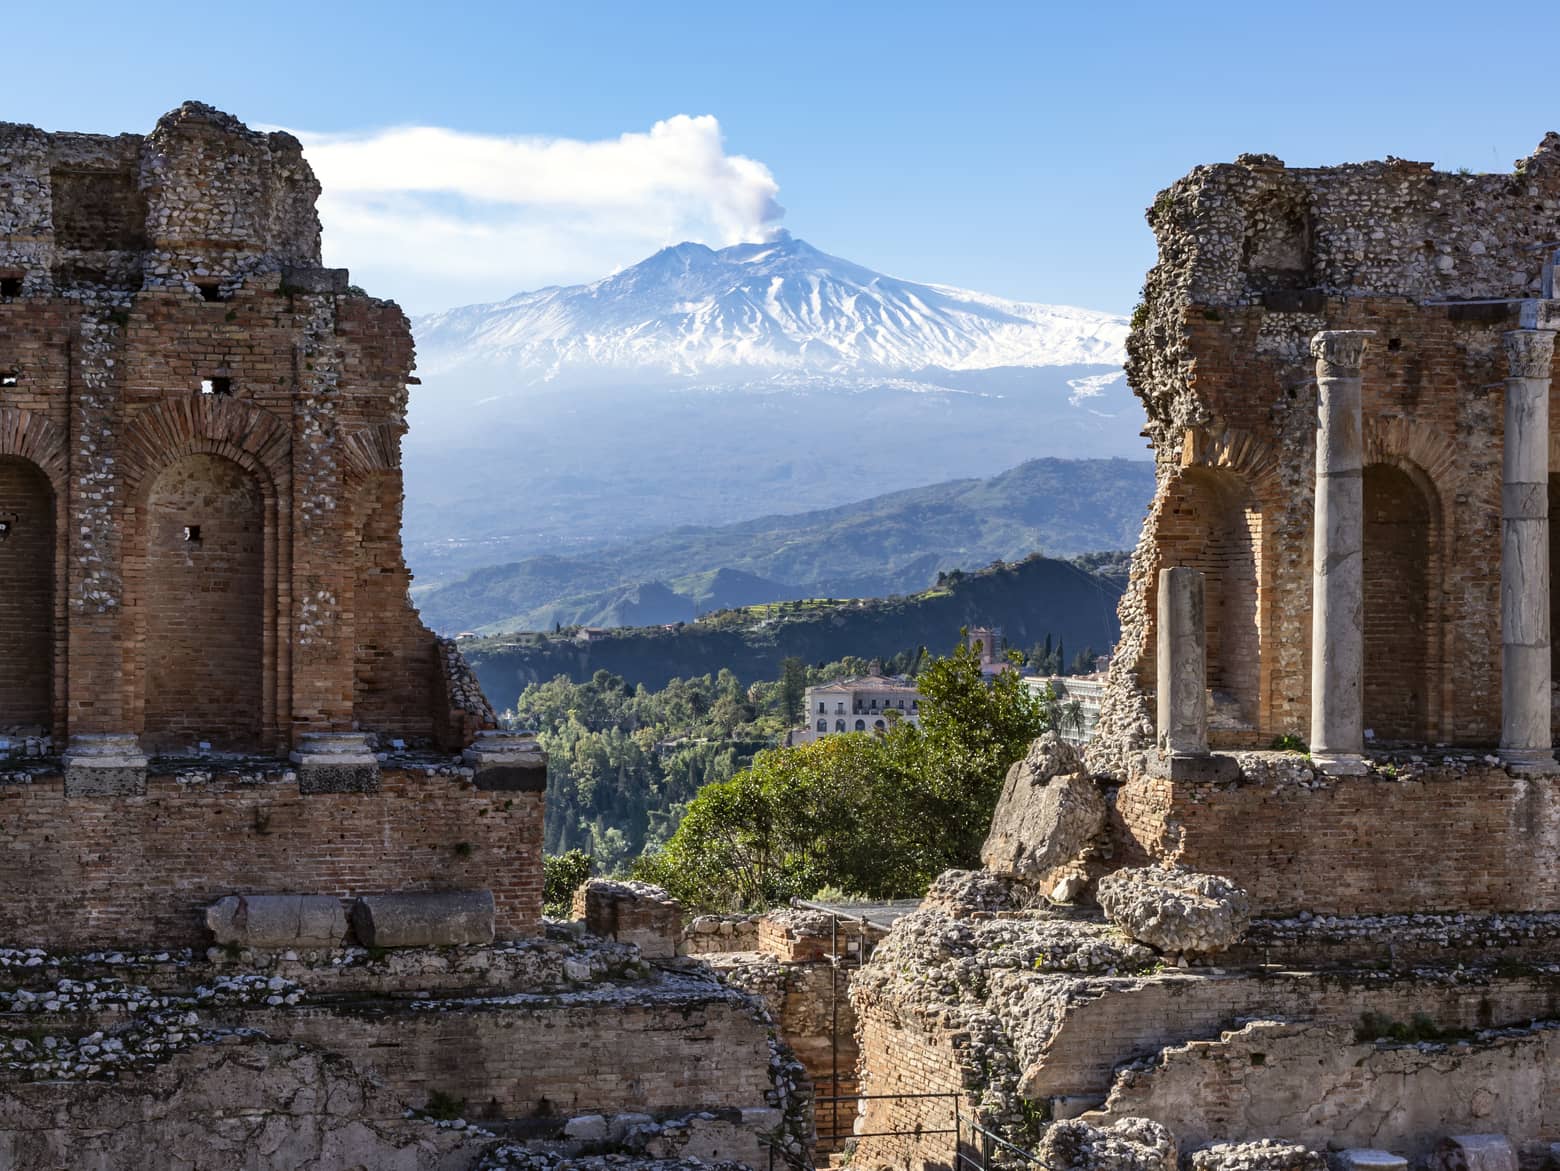  Ascend Mount Etna, a UNESCO World Heritage site  